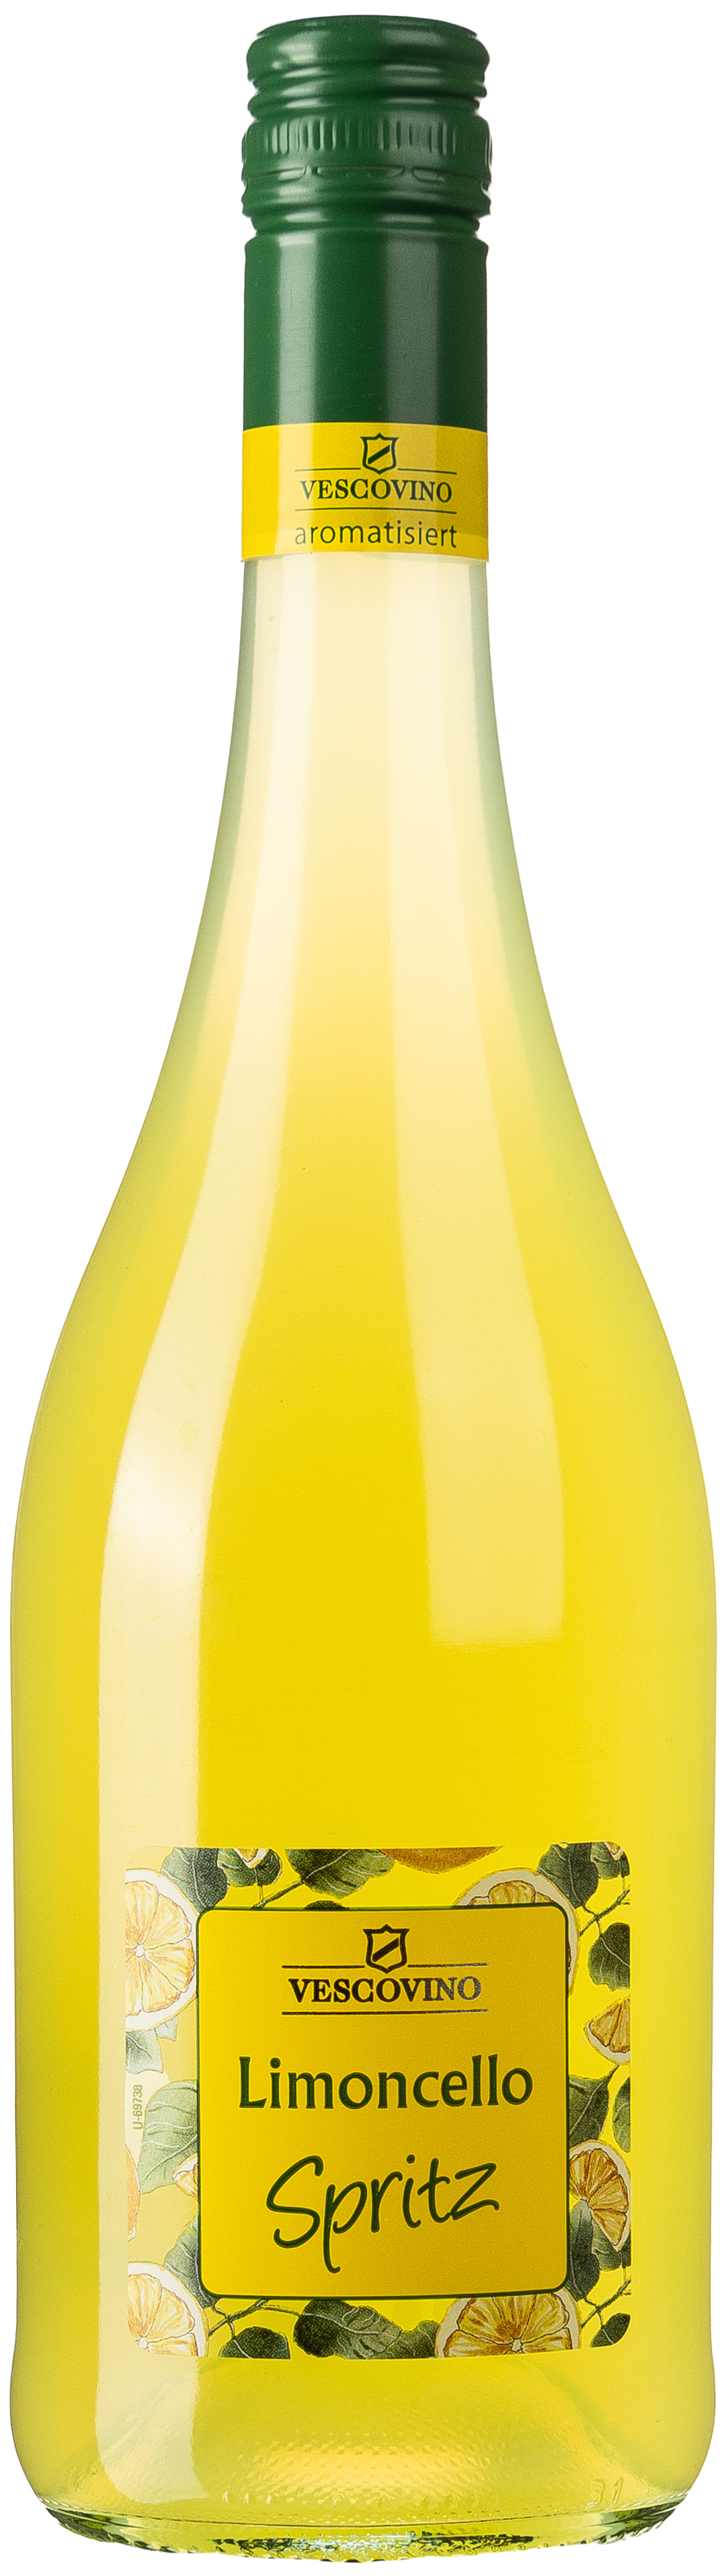 Vescovino Limoncello Spritz 10% vol. 0,75L